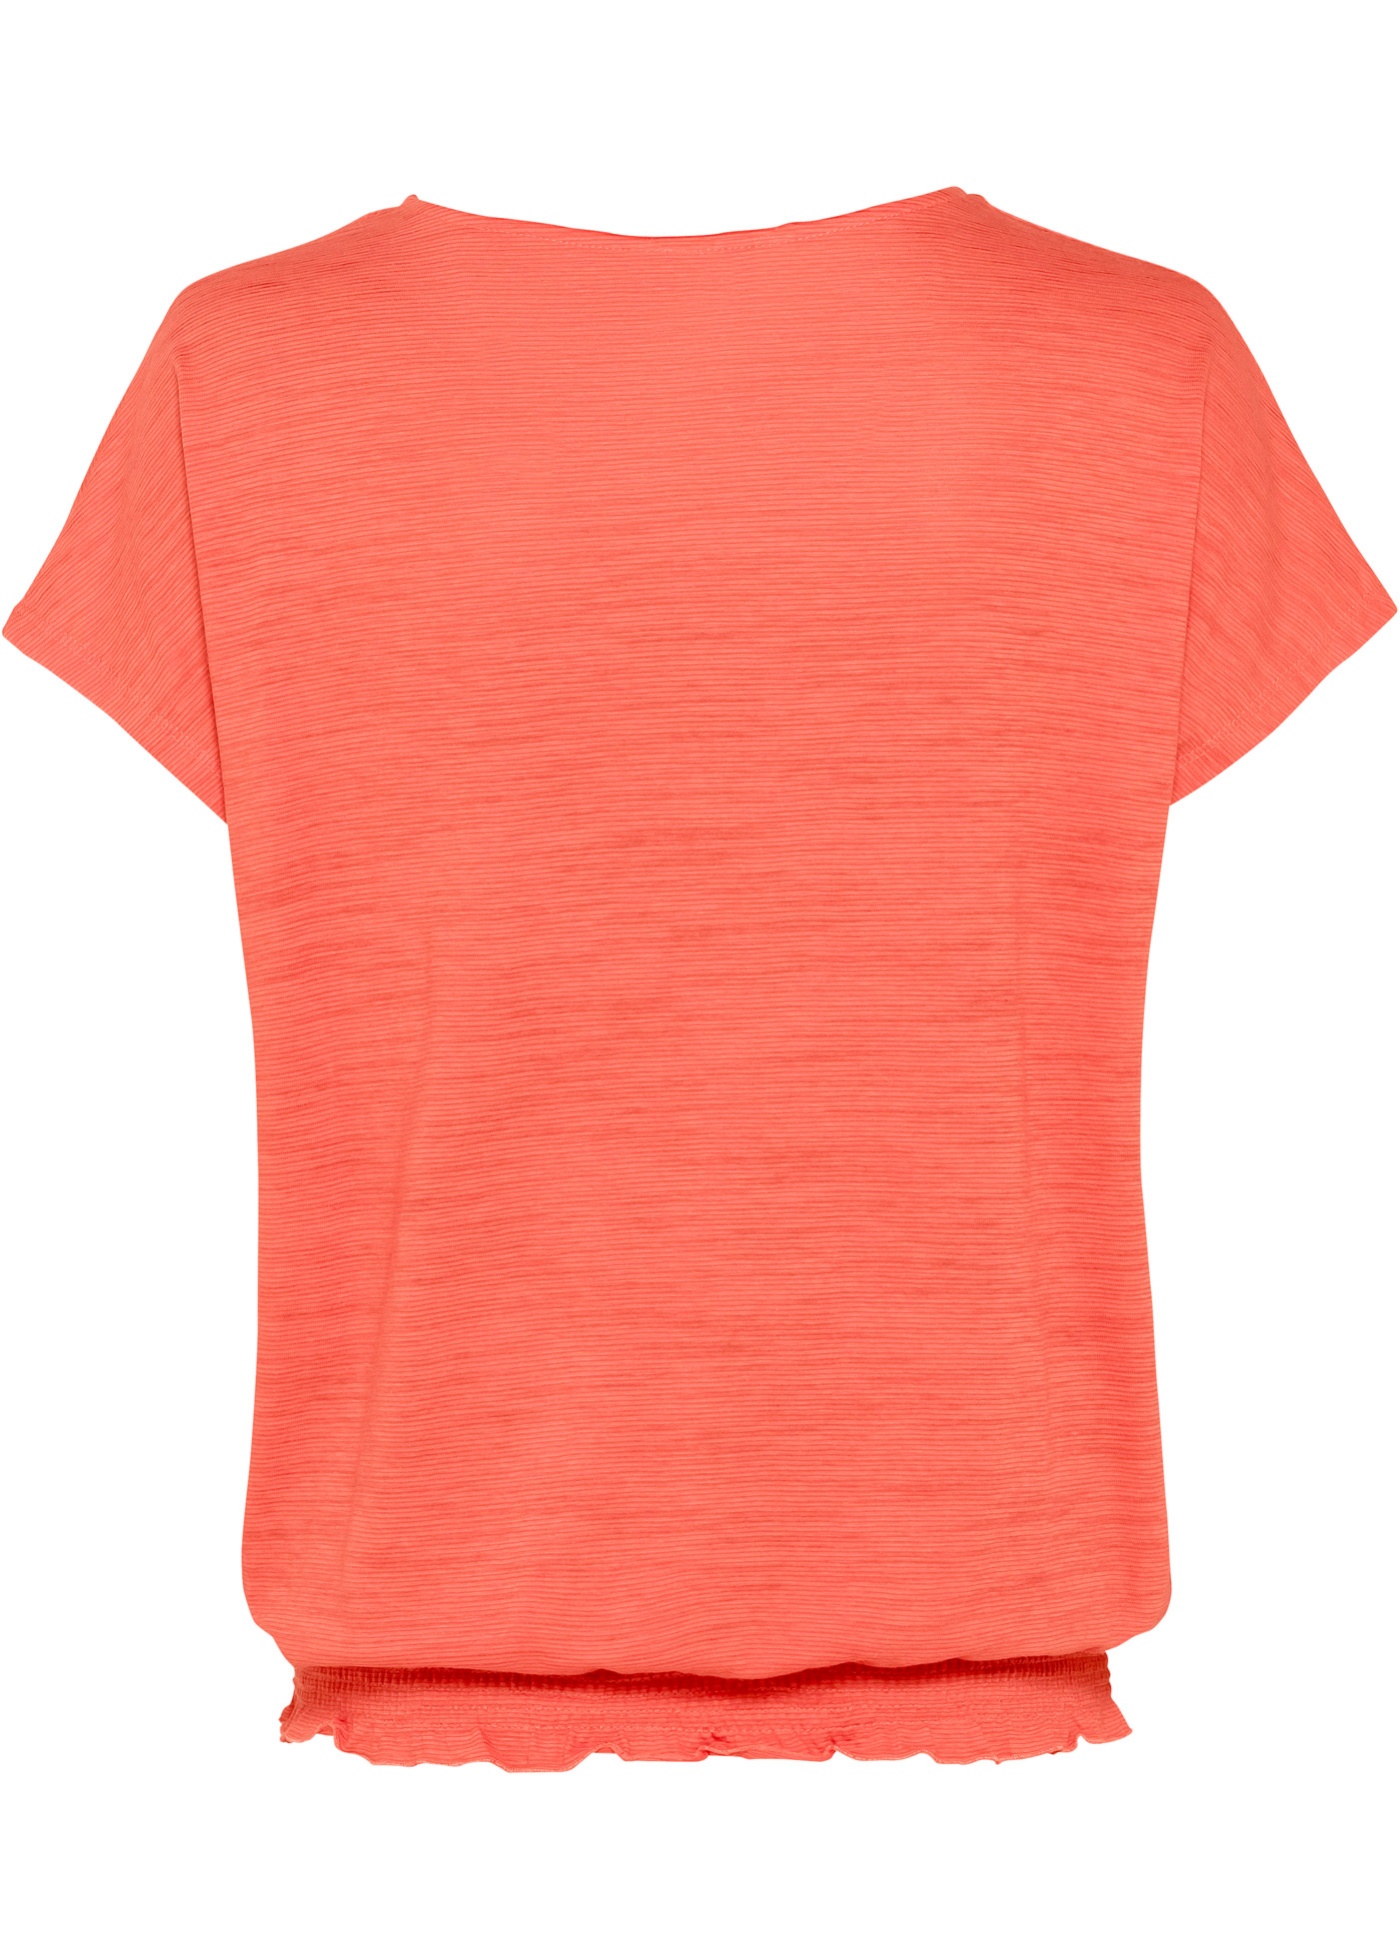 Luftiges Shirt mit elastischem Bund am Saum. (94013395) in hummer